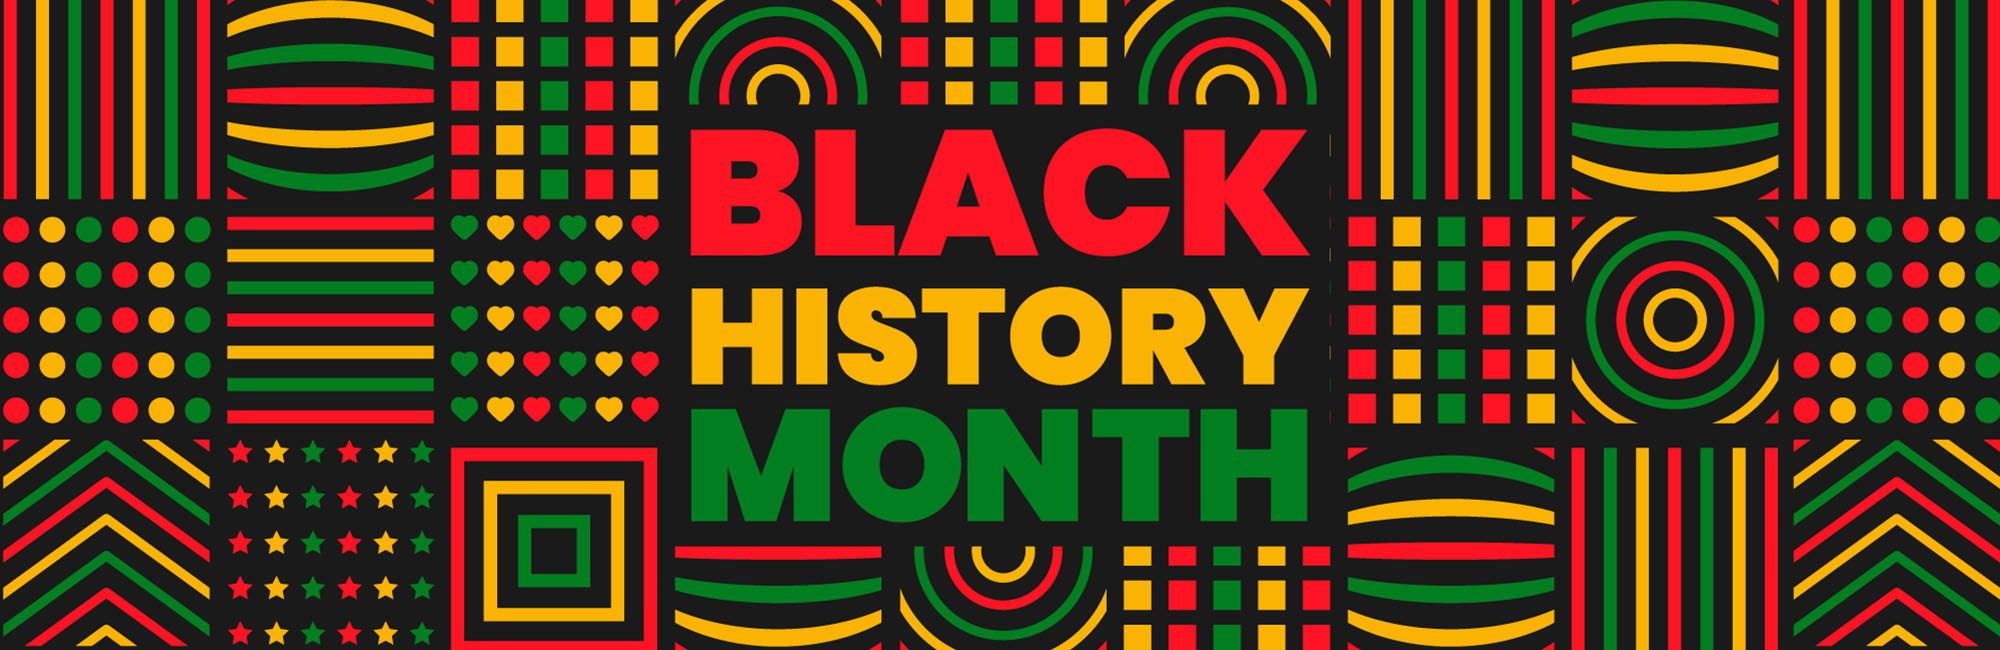 black-history-month-header-2000 image